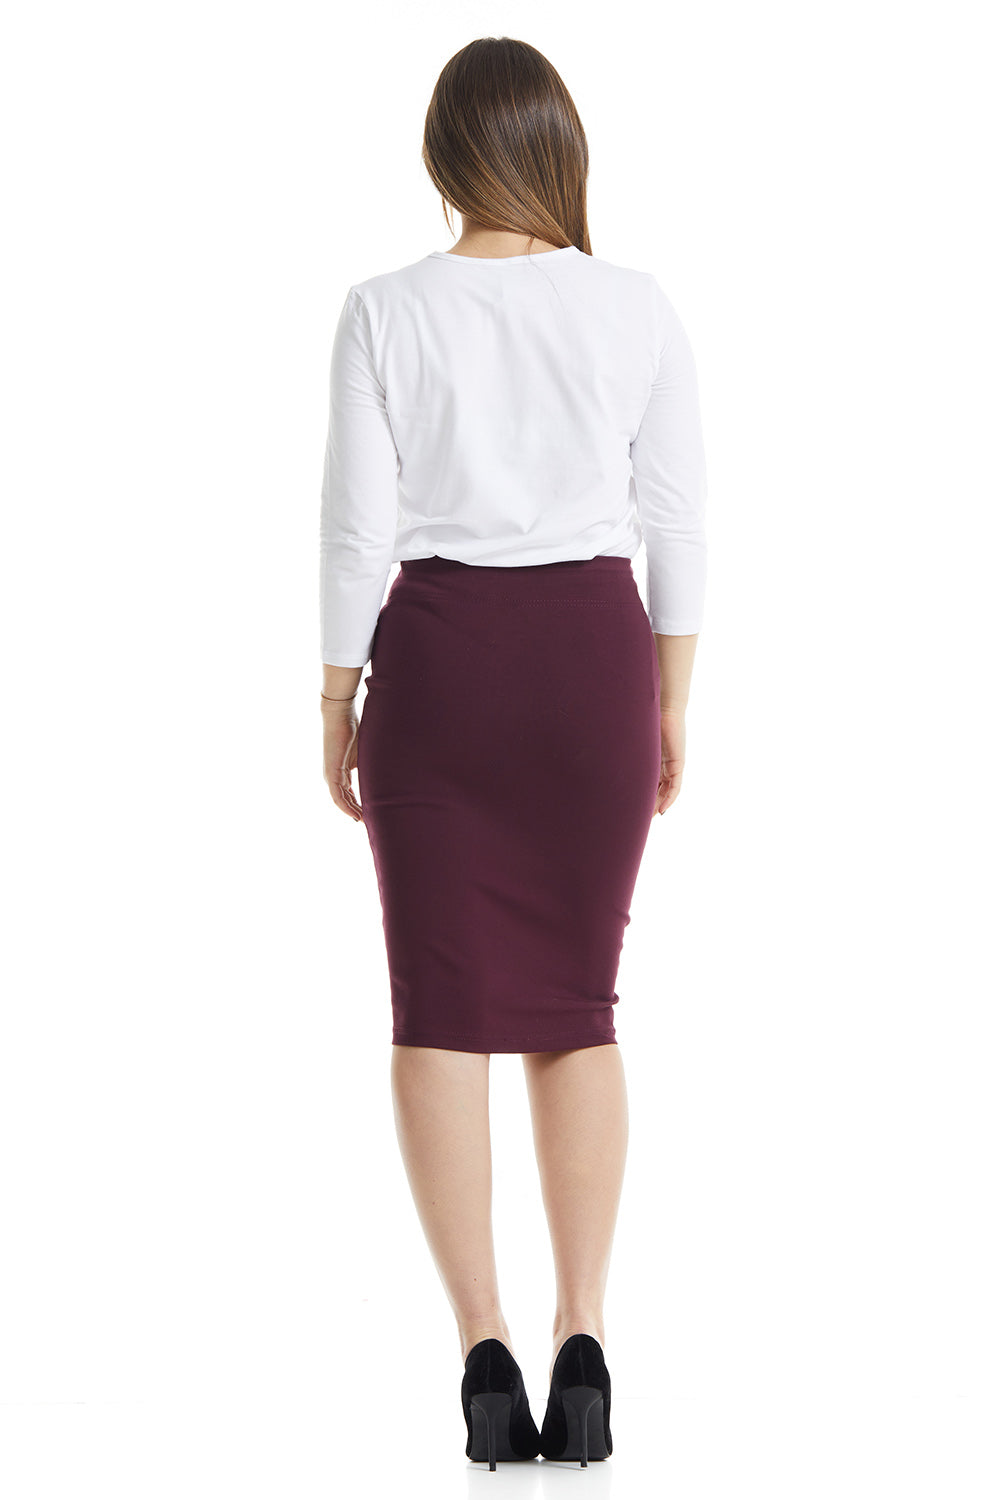 burgundy knee length pencil skirt for women